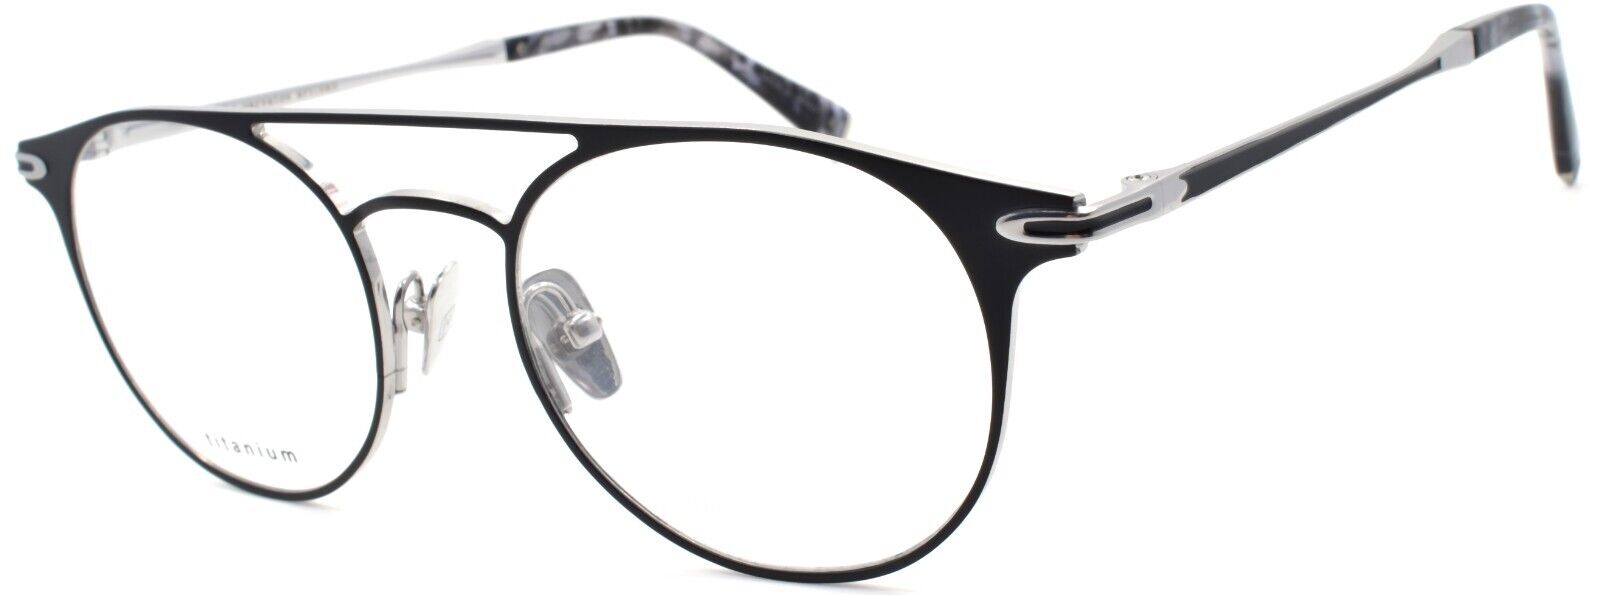 1-John Varvatos V169 Men's Eyeglasses Aviator Titanium 49-18-145 Black / Silver-751286317459-IKSpecs